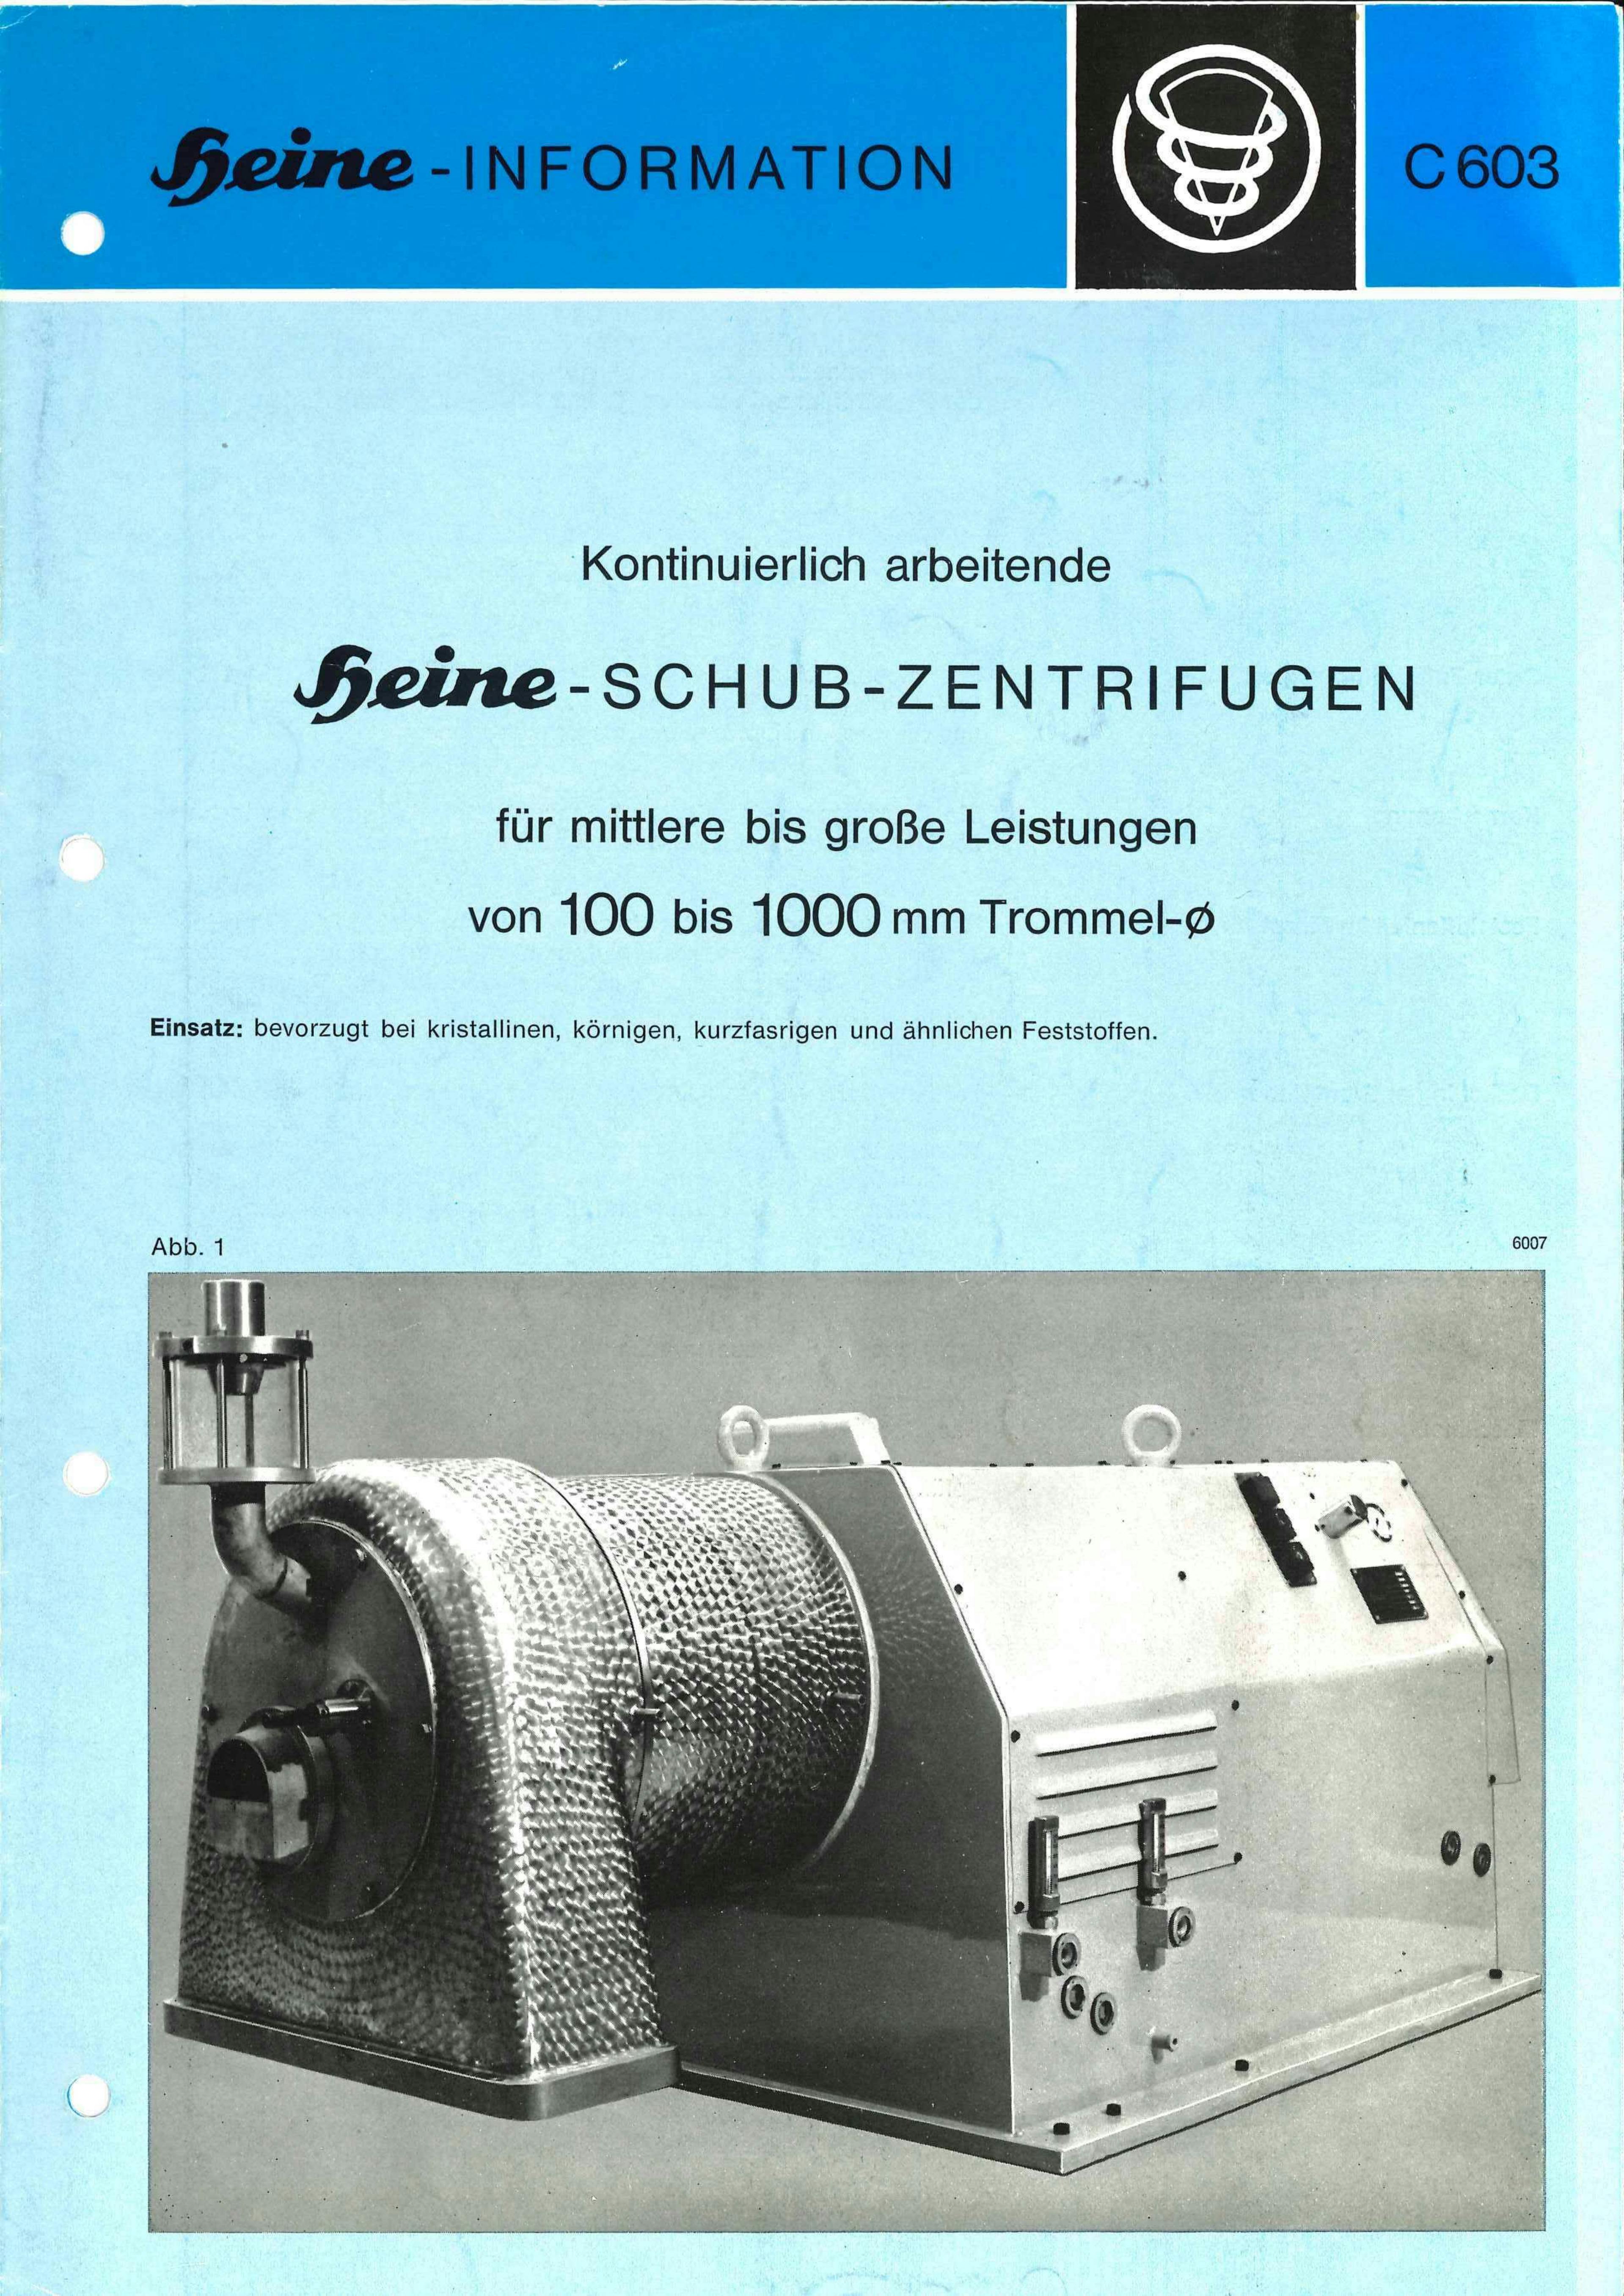 Heine Zentrifug 606 - Centrífuga de empuje - image 12